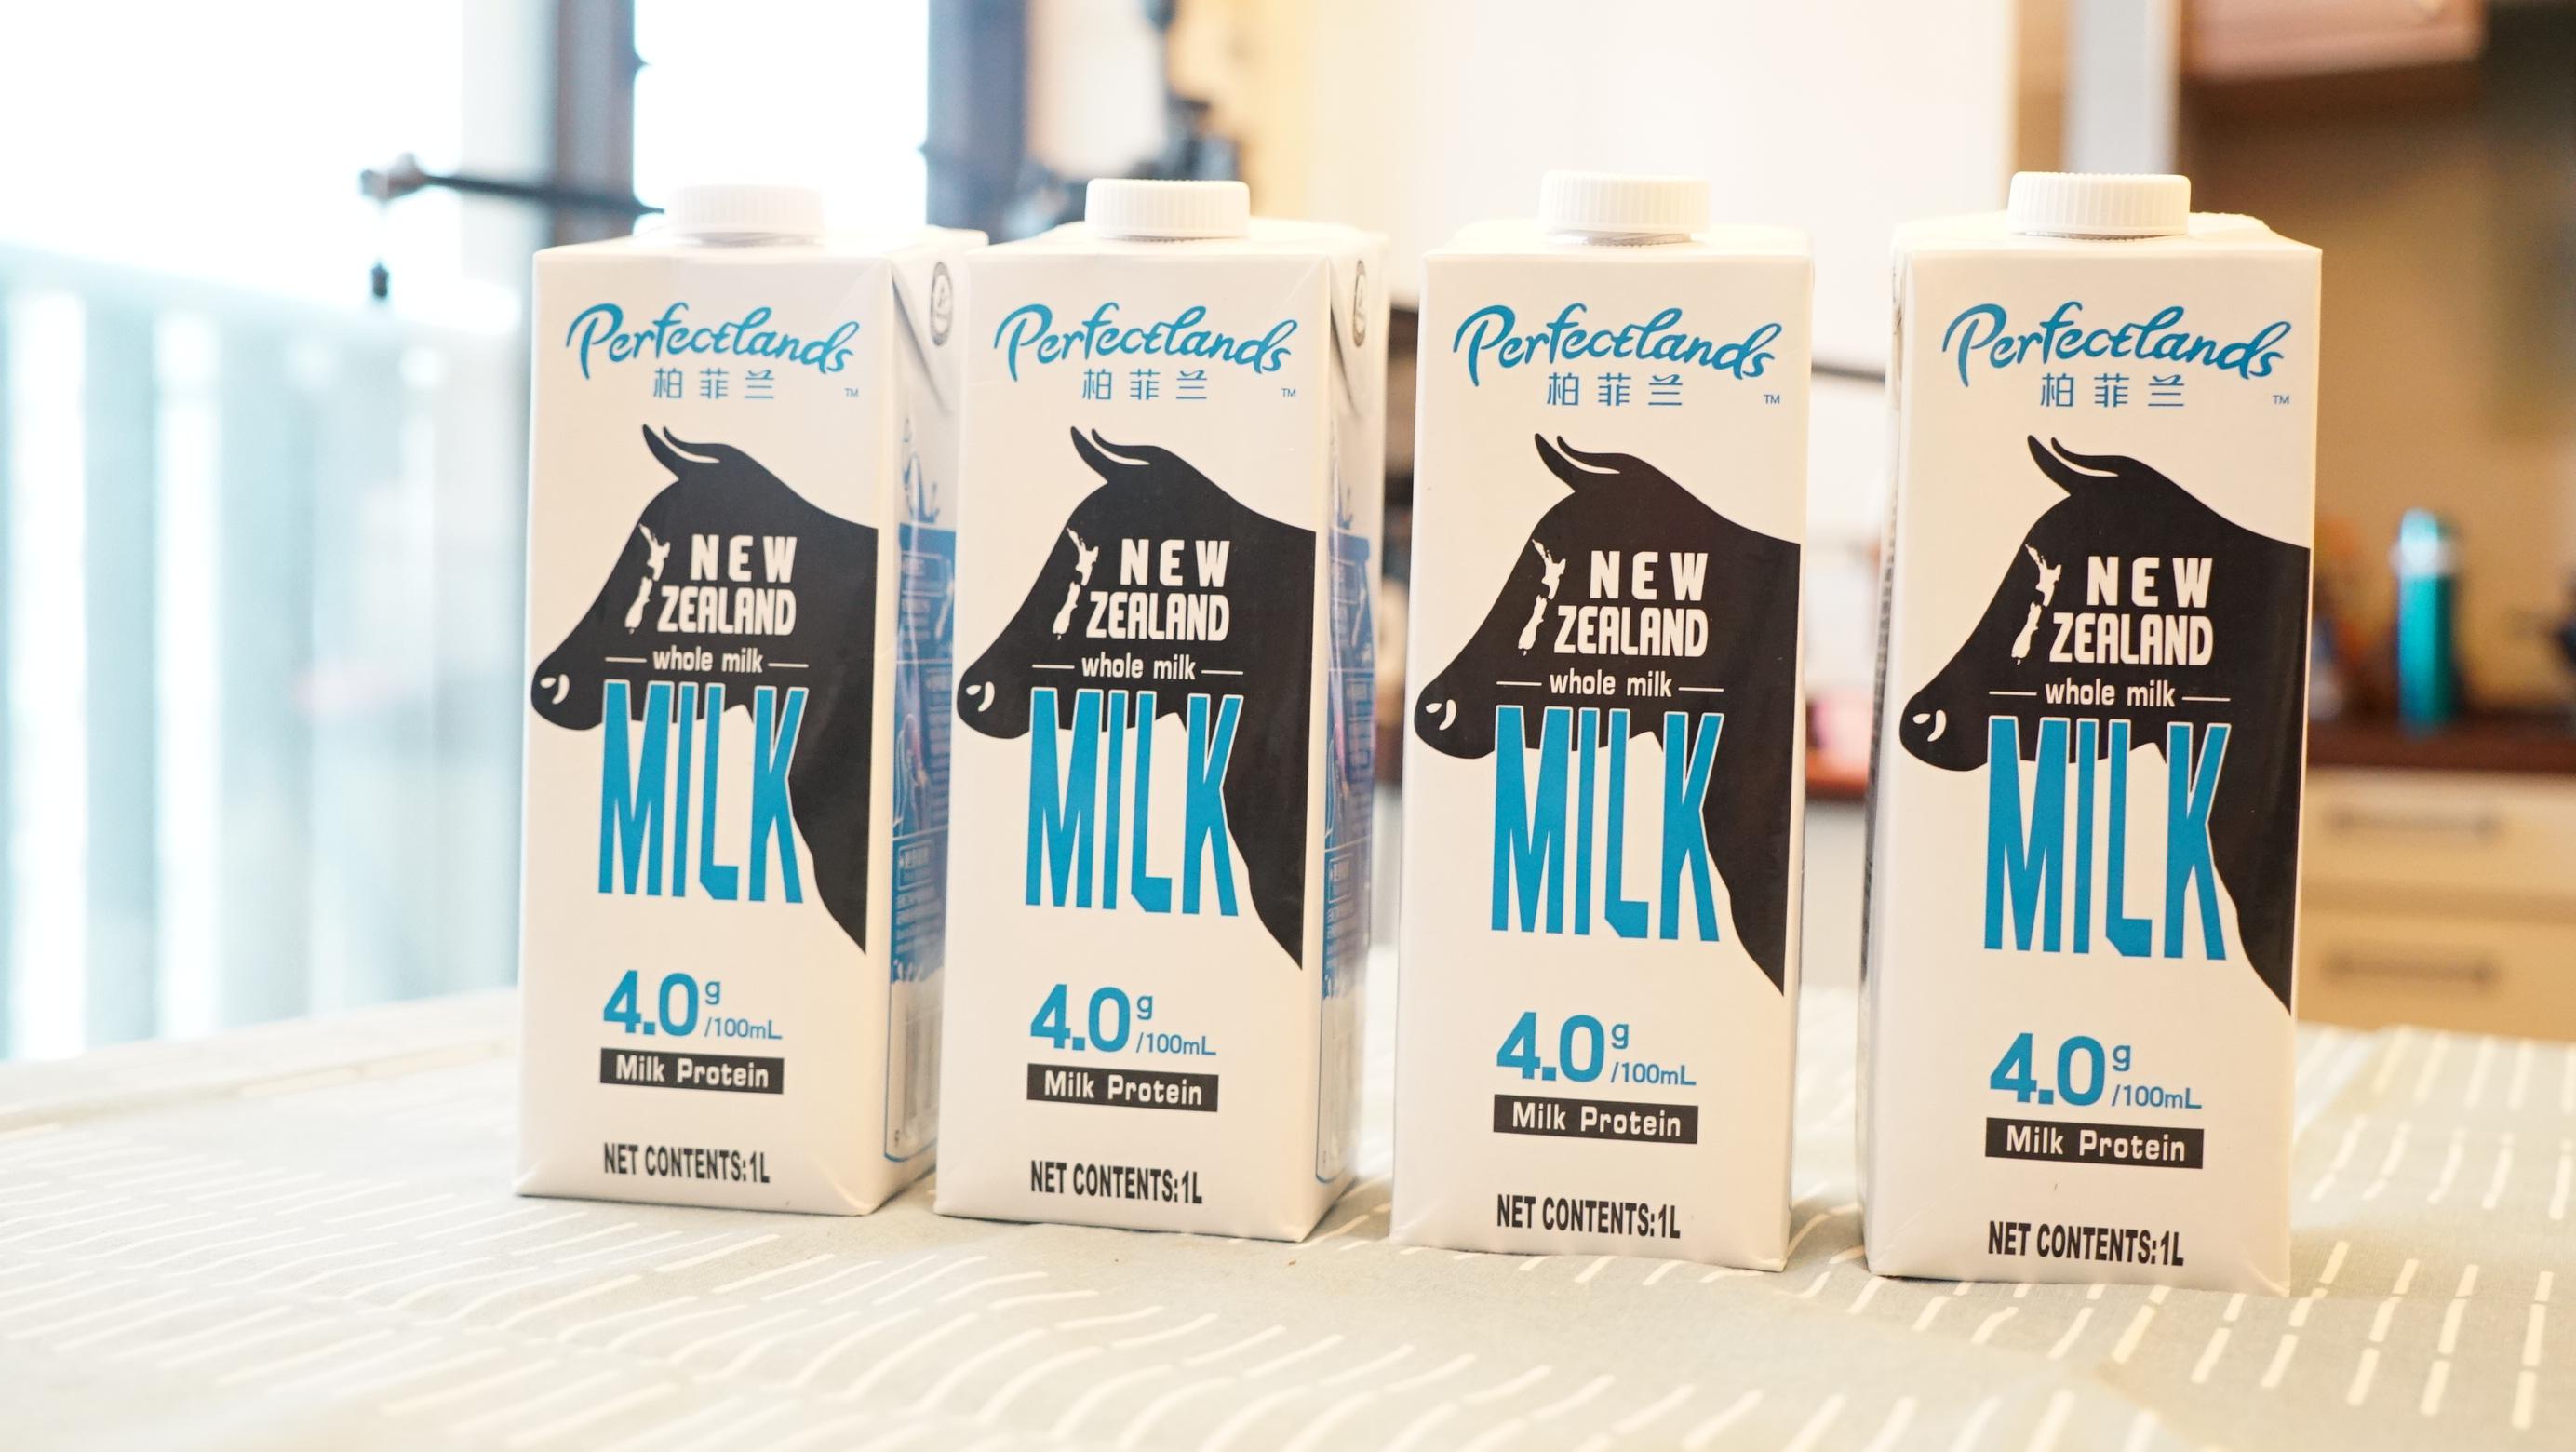 牛奶到底能有多浓醇？柏菲兰评测告诉你12